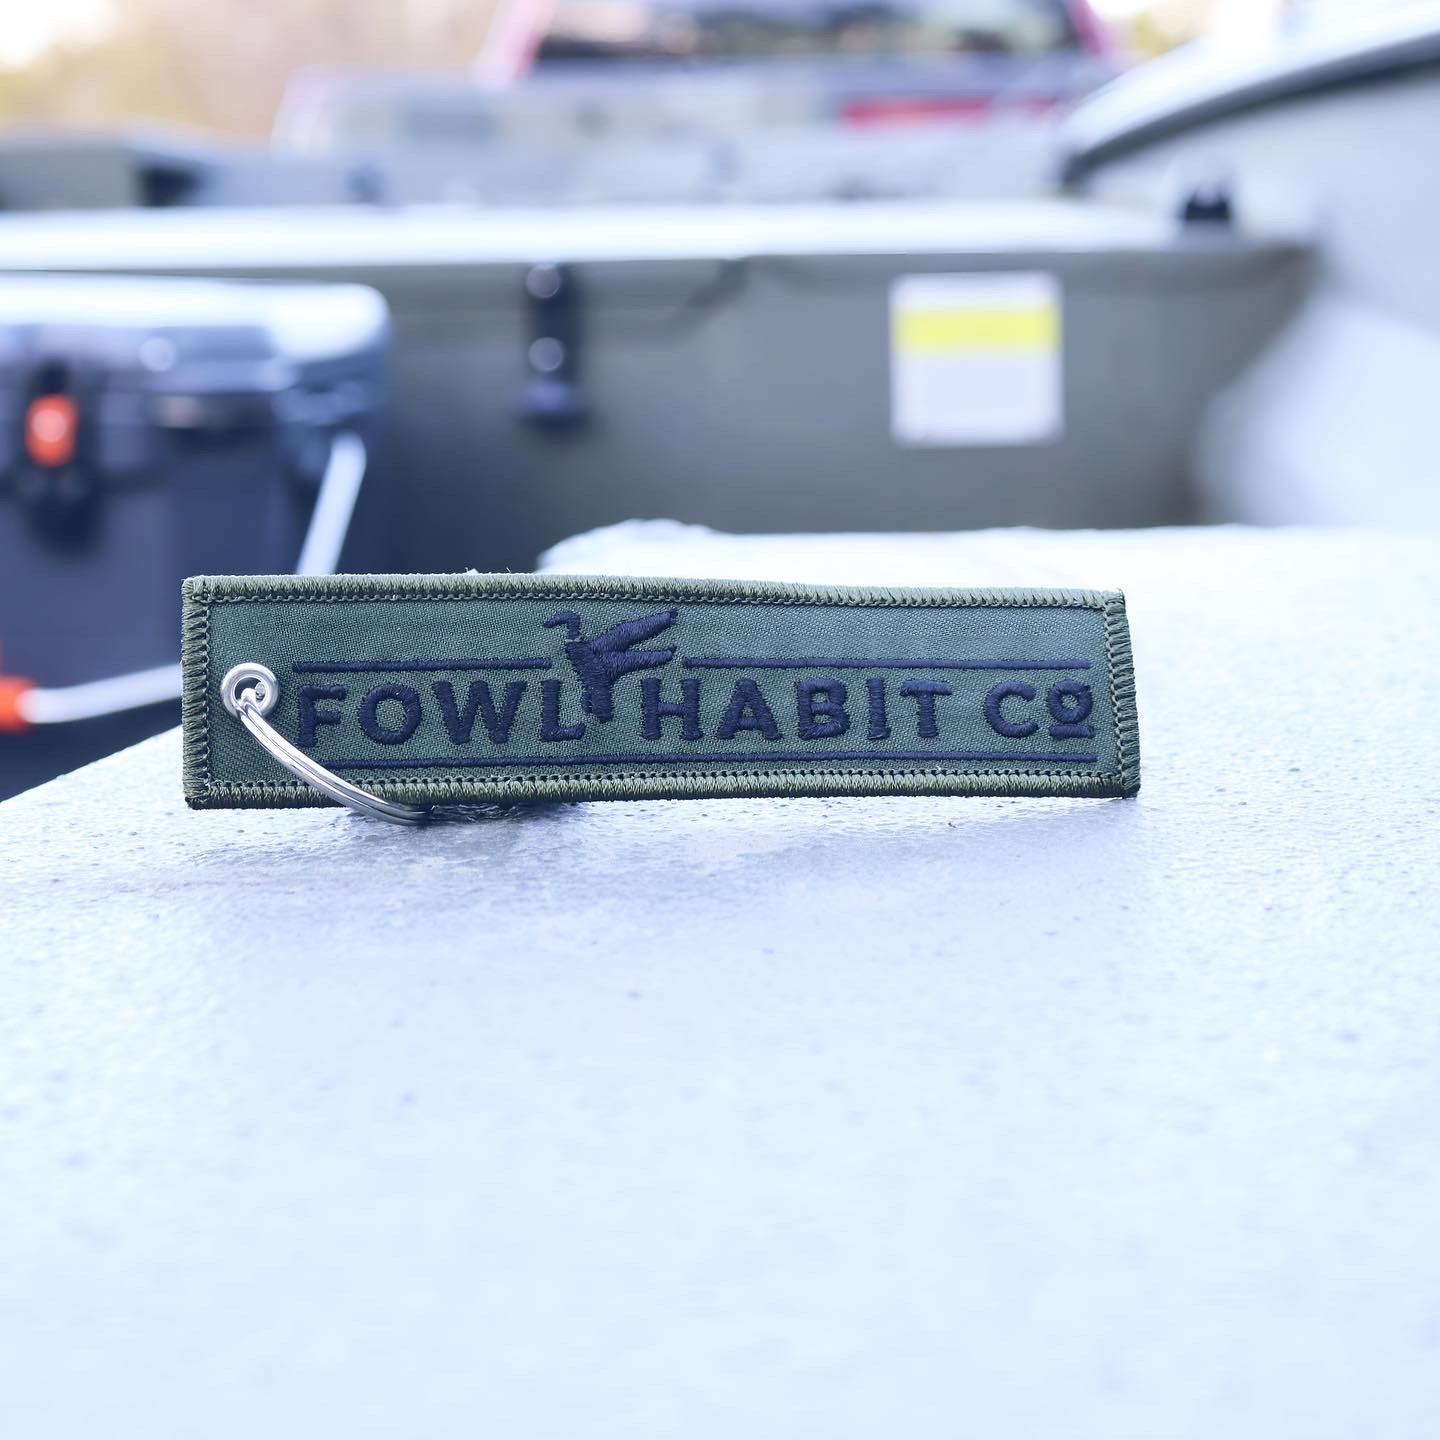 Green Fowl Habit Co. Key Tag - Fowl Habit Co.